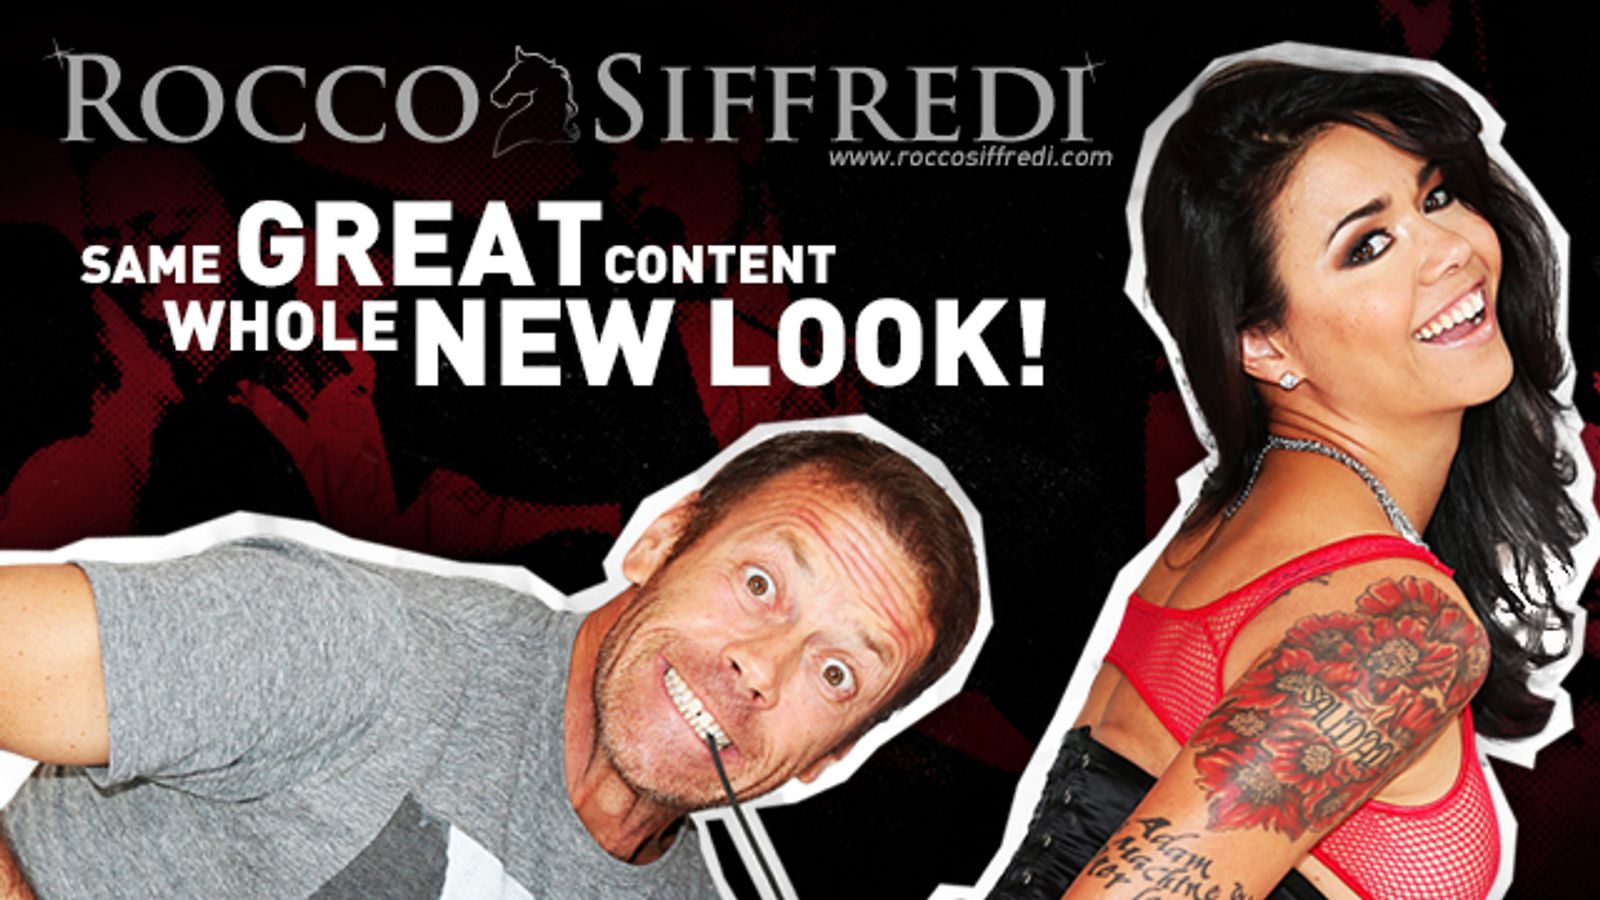 RoccoSiffredi.com Gets a Facelift